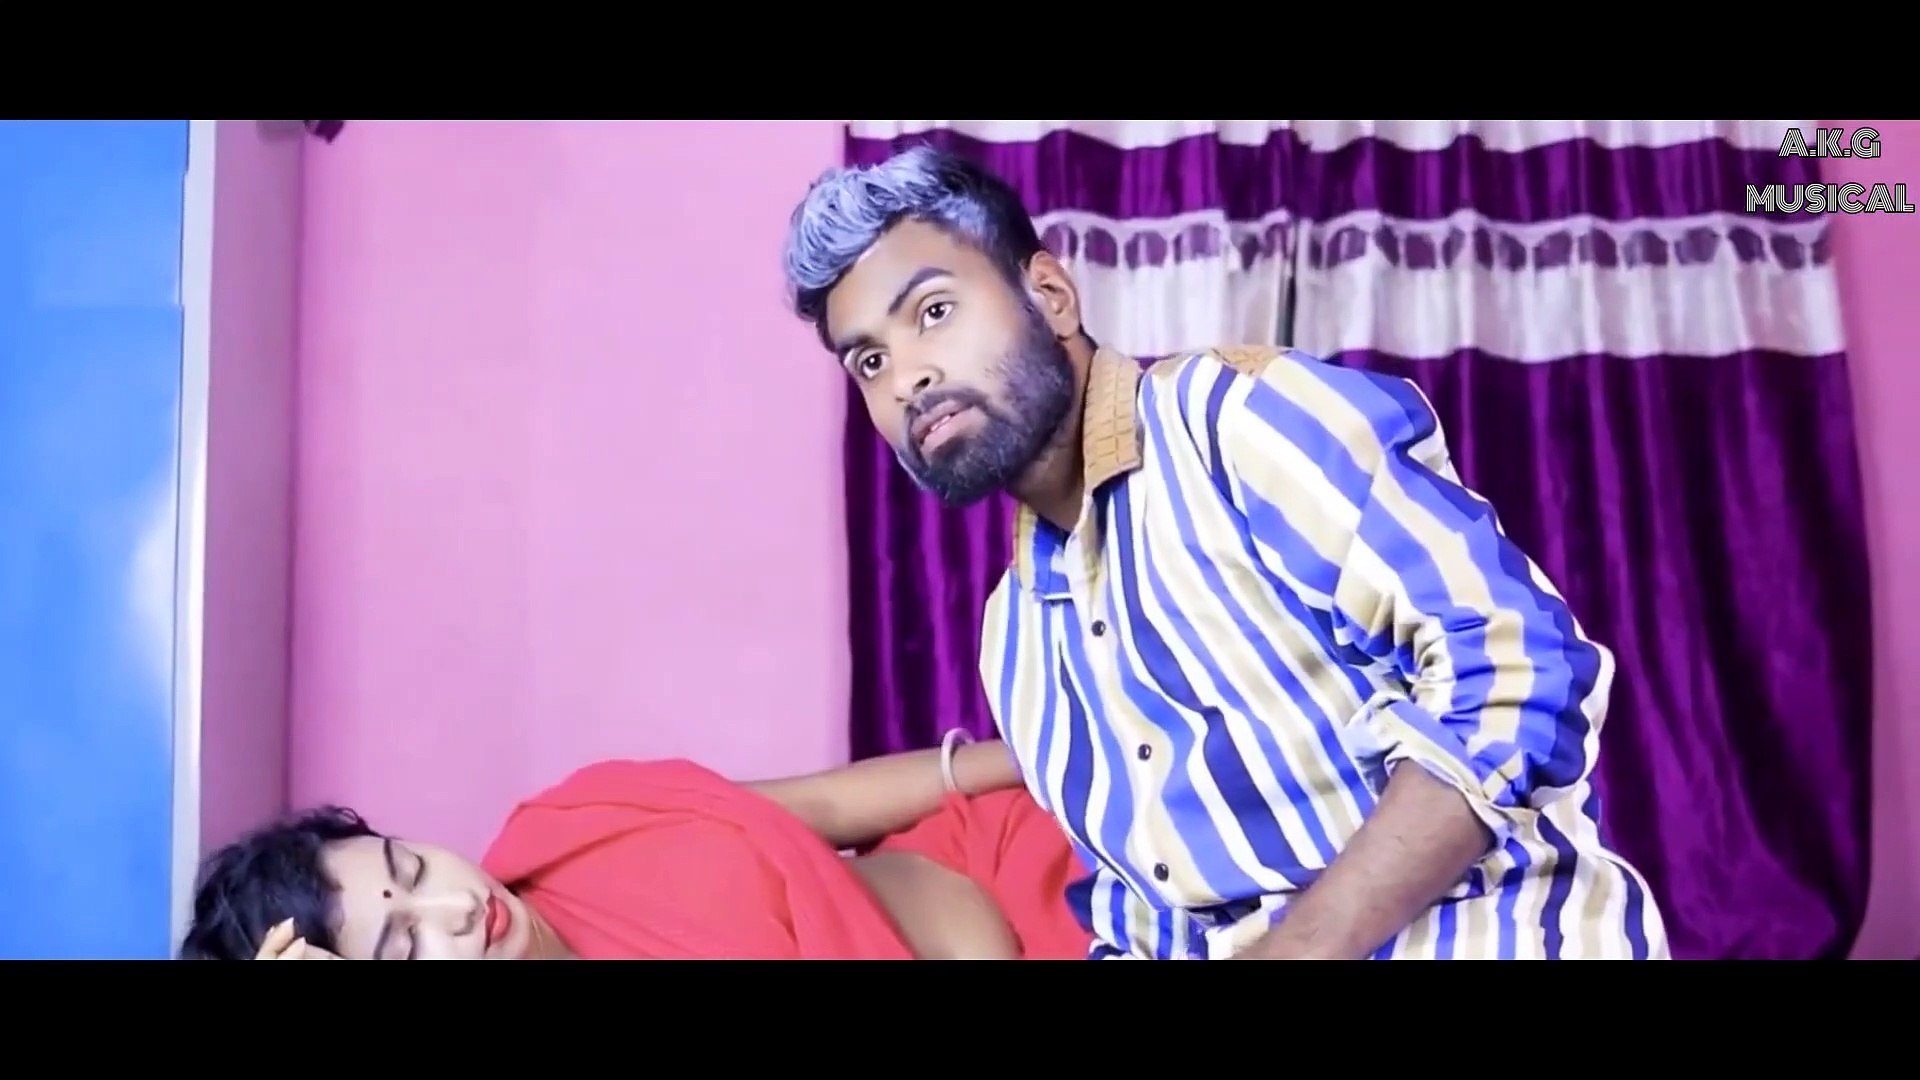 Sasur And Bahu Romantic Love Story Indian Sasur Ne Bahu Ko Pela Video AkgMusical